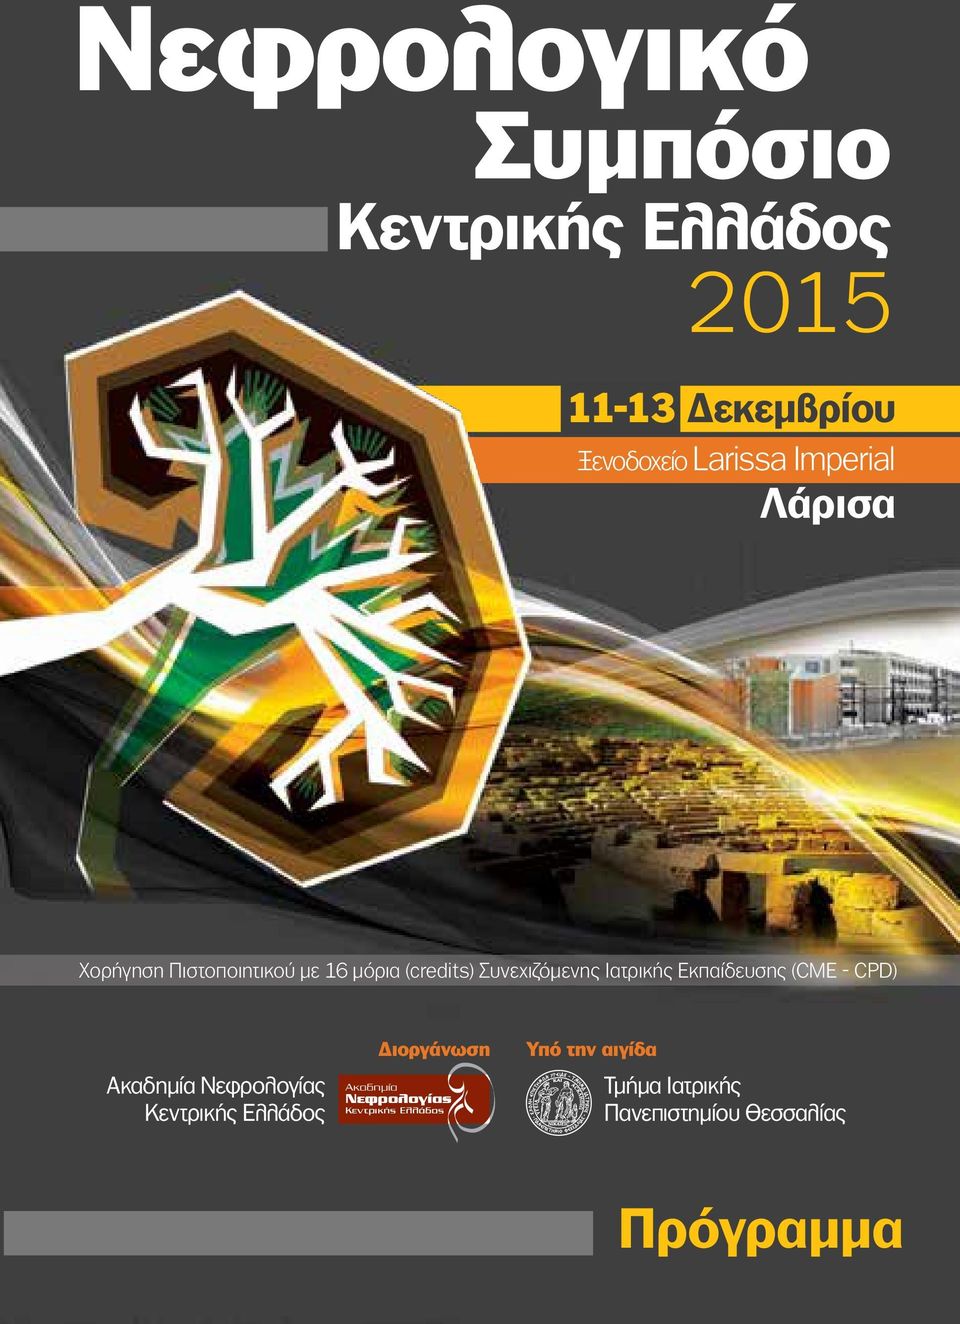 Εκπαίδευσης (CME - CPD) Ακαδημία Νεφρολογίας Κεντρικής Ελλάδος